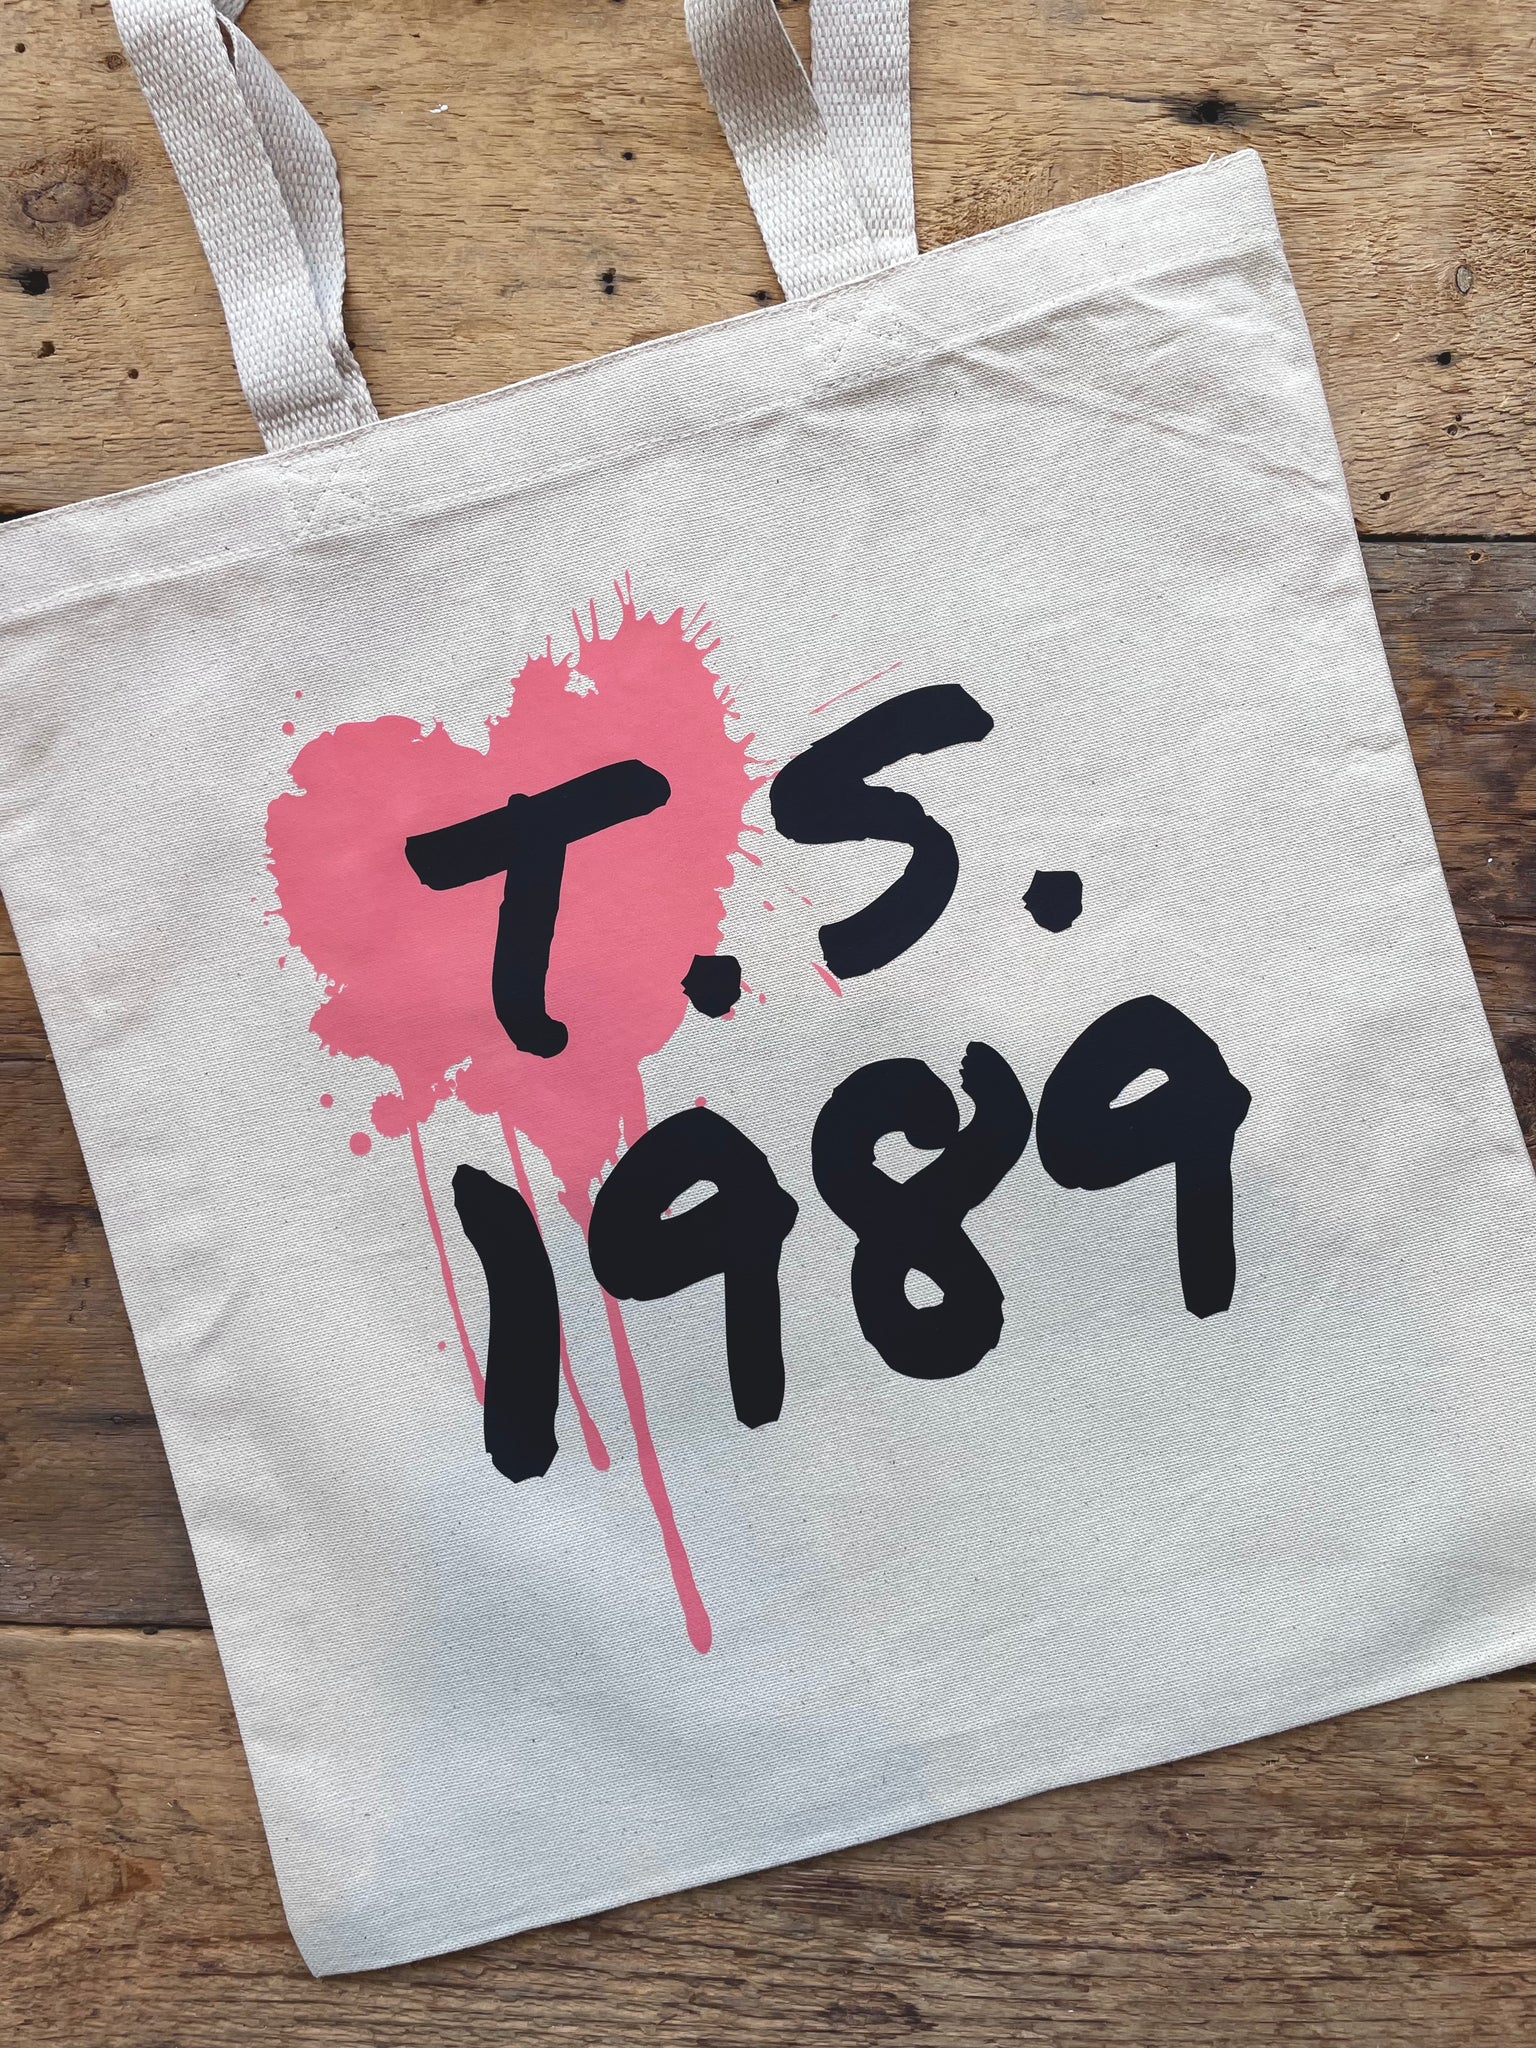 Taylor 1989 Tote Bag